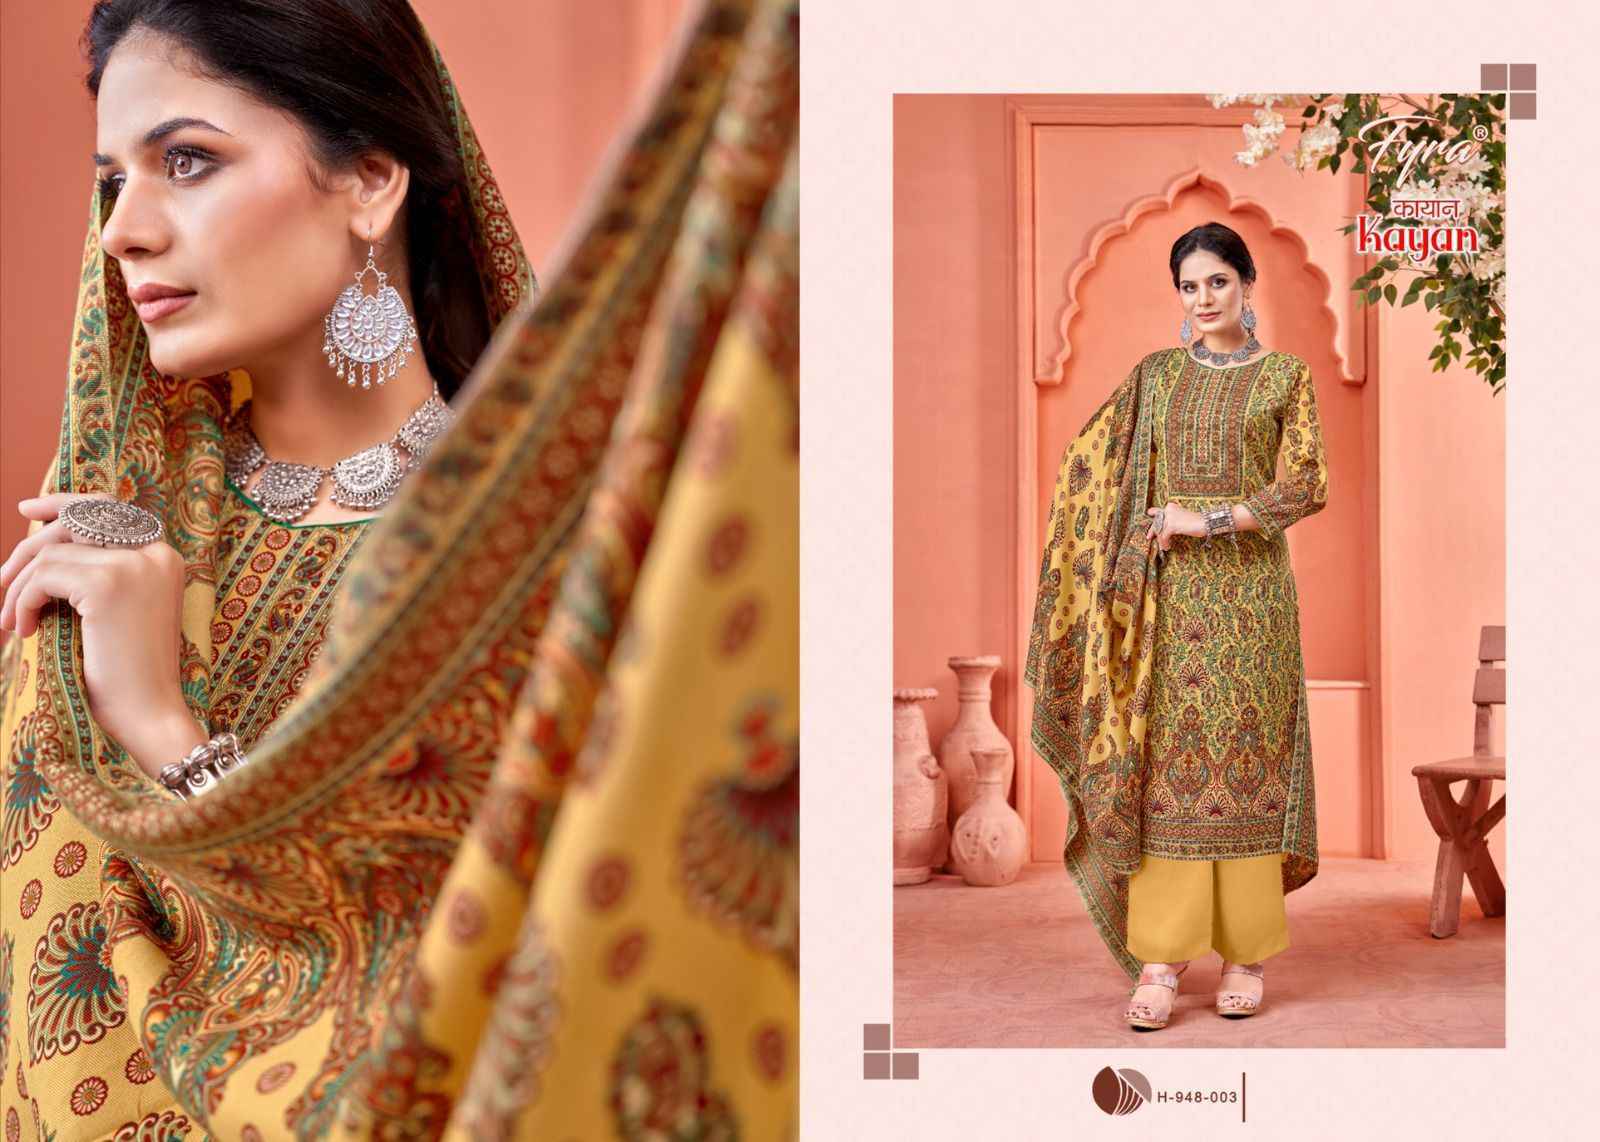 Fyra Kayan Pashmina Spun Dress Material 8 pcs Catalogue - Wholesale Factory